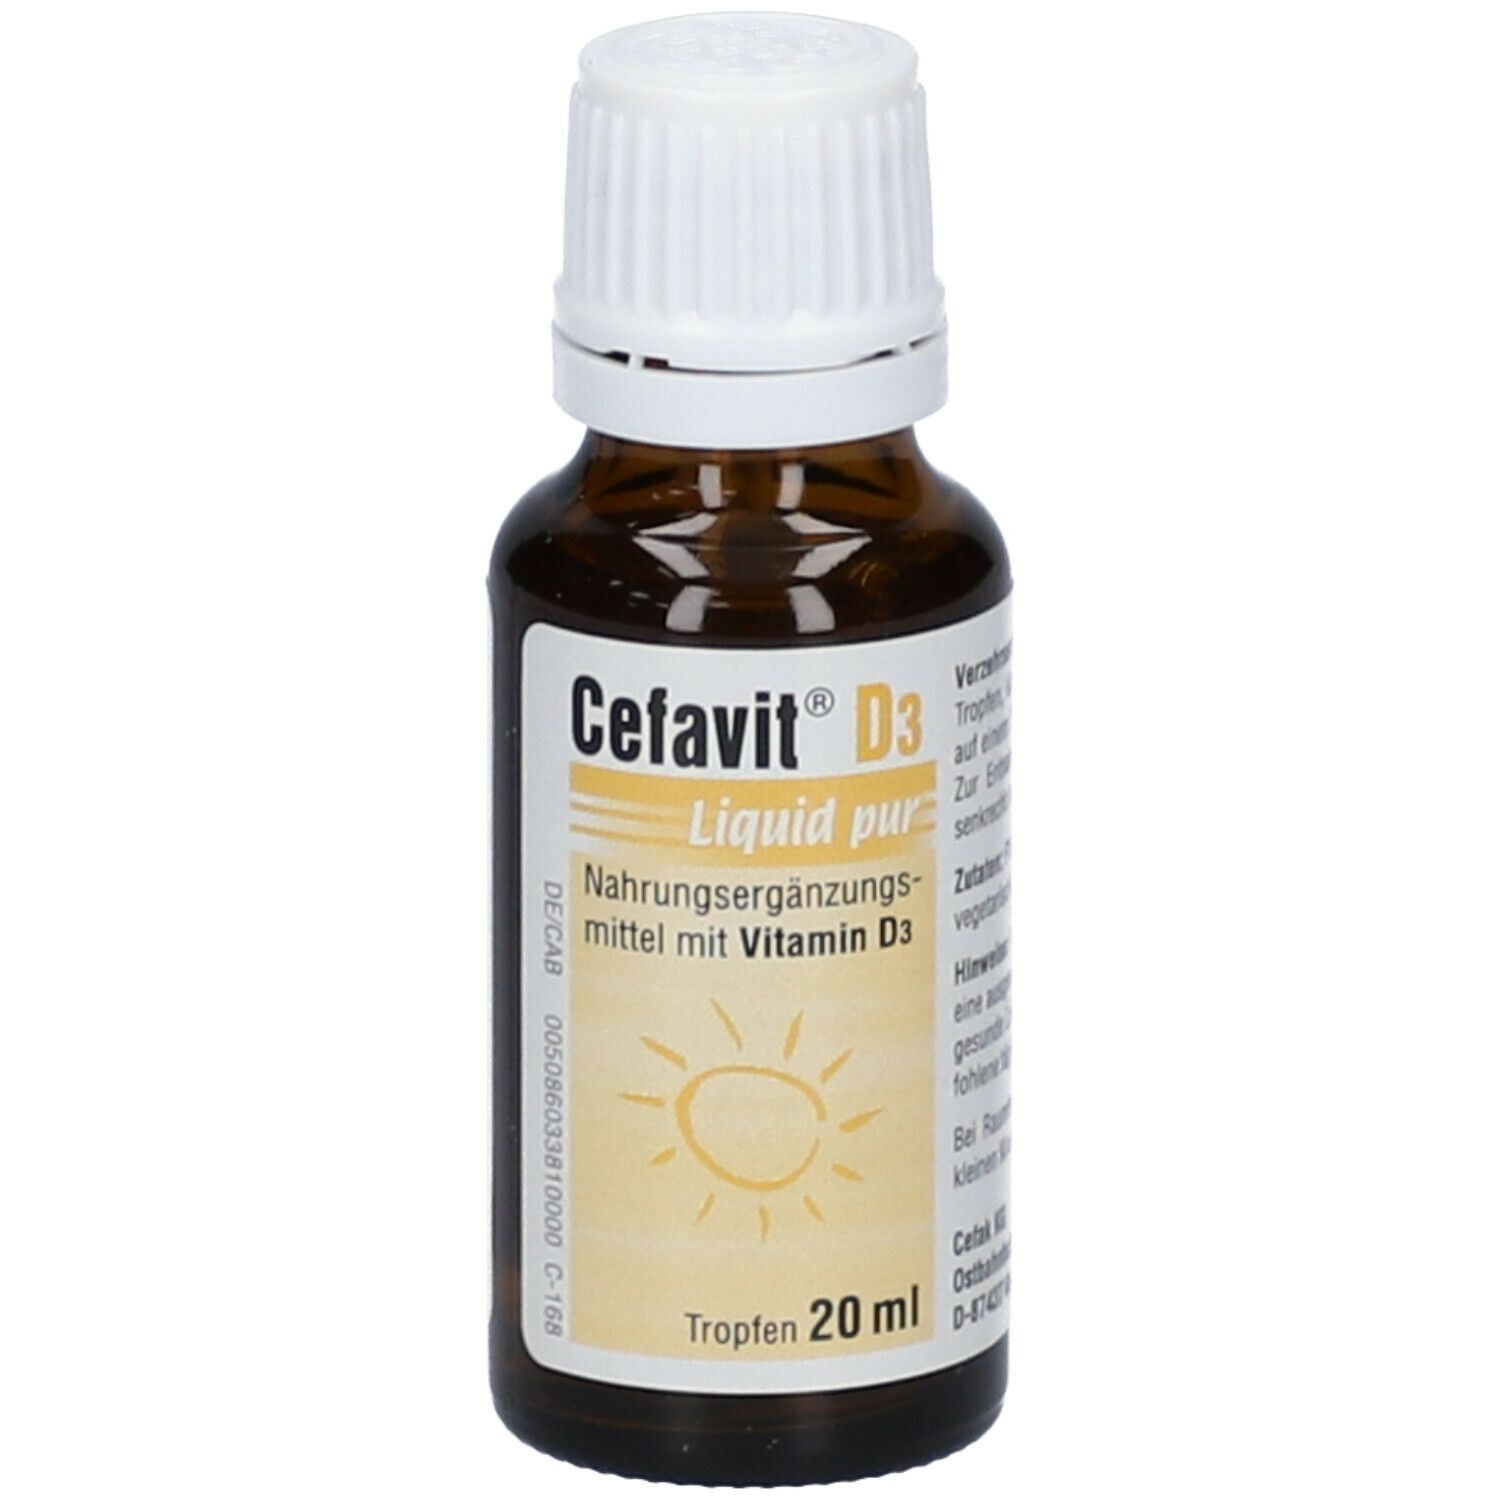 Image of Cefavit® D3 Liquid pur